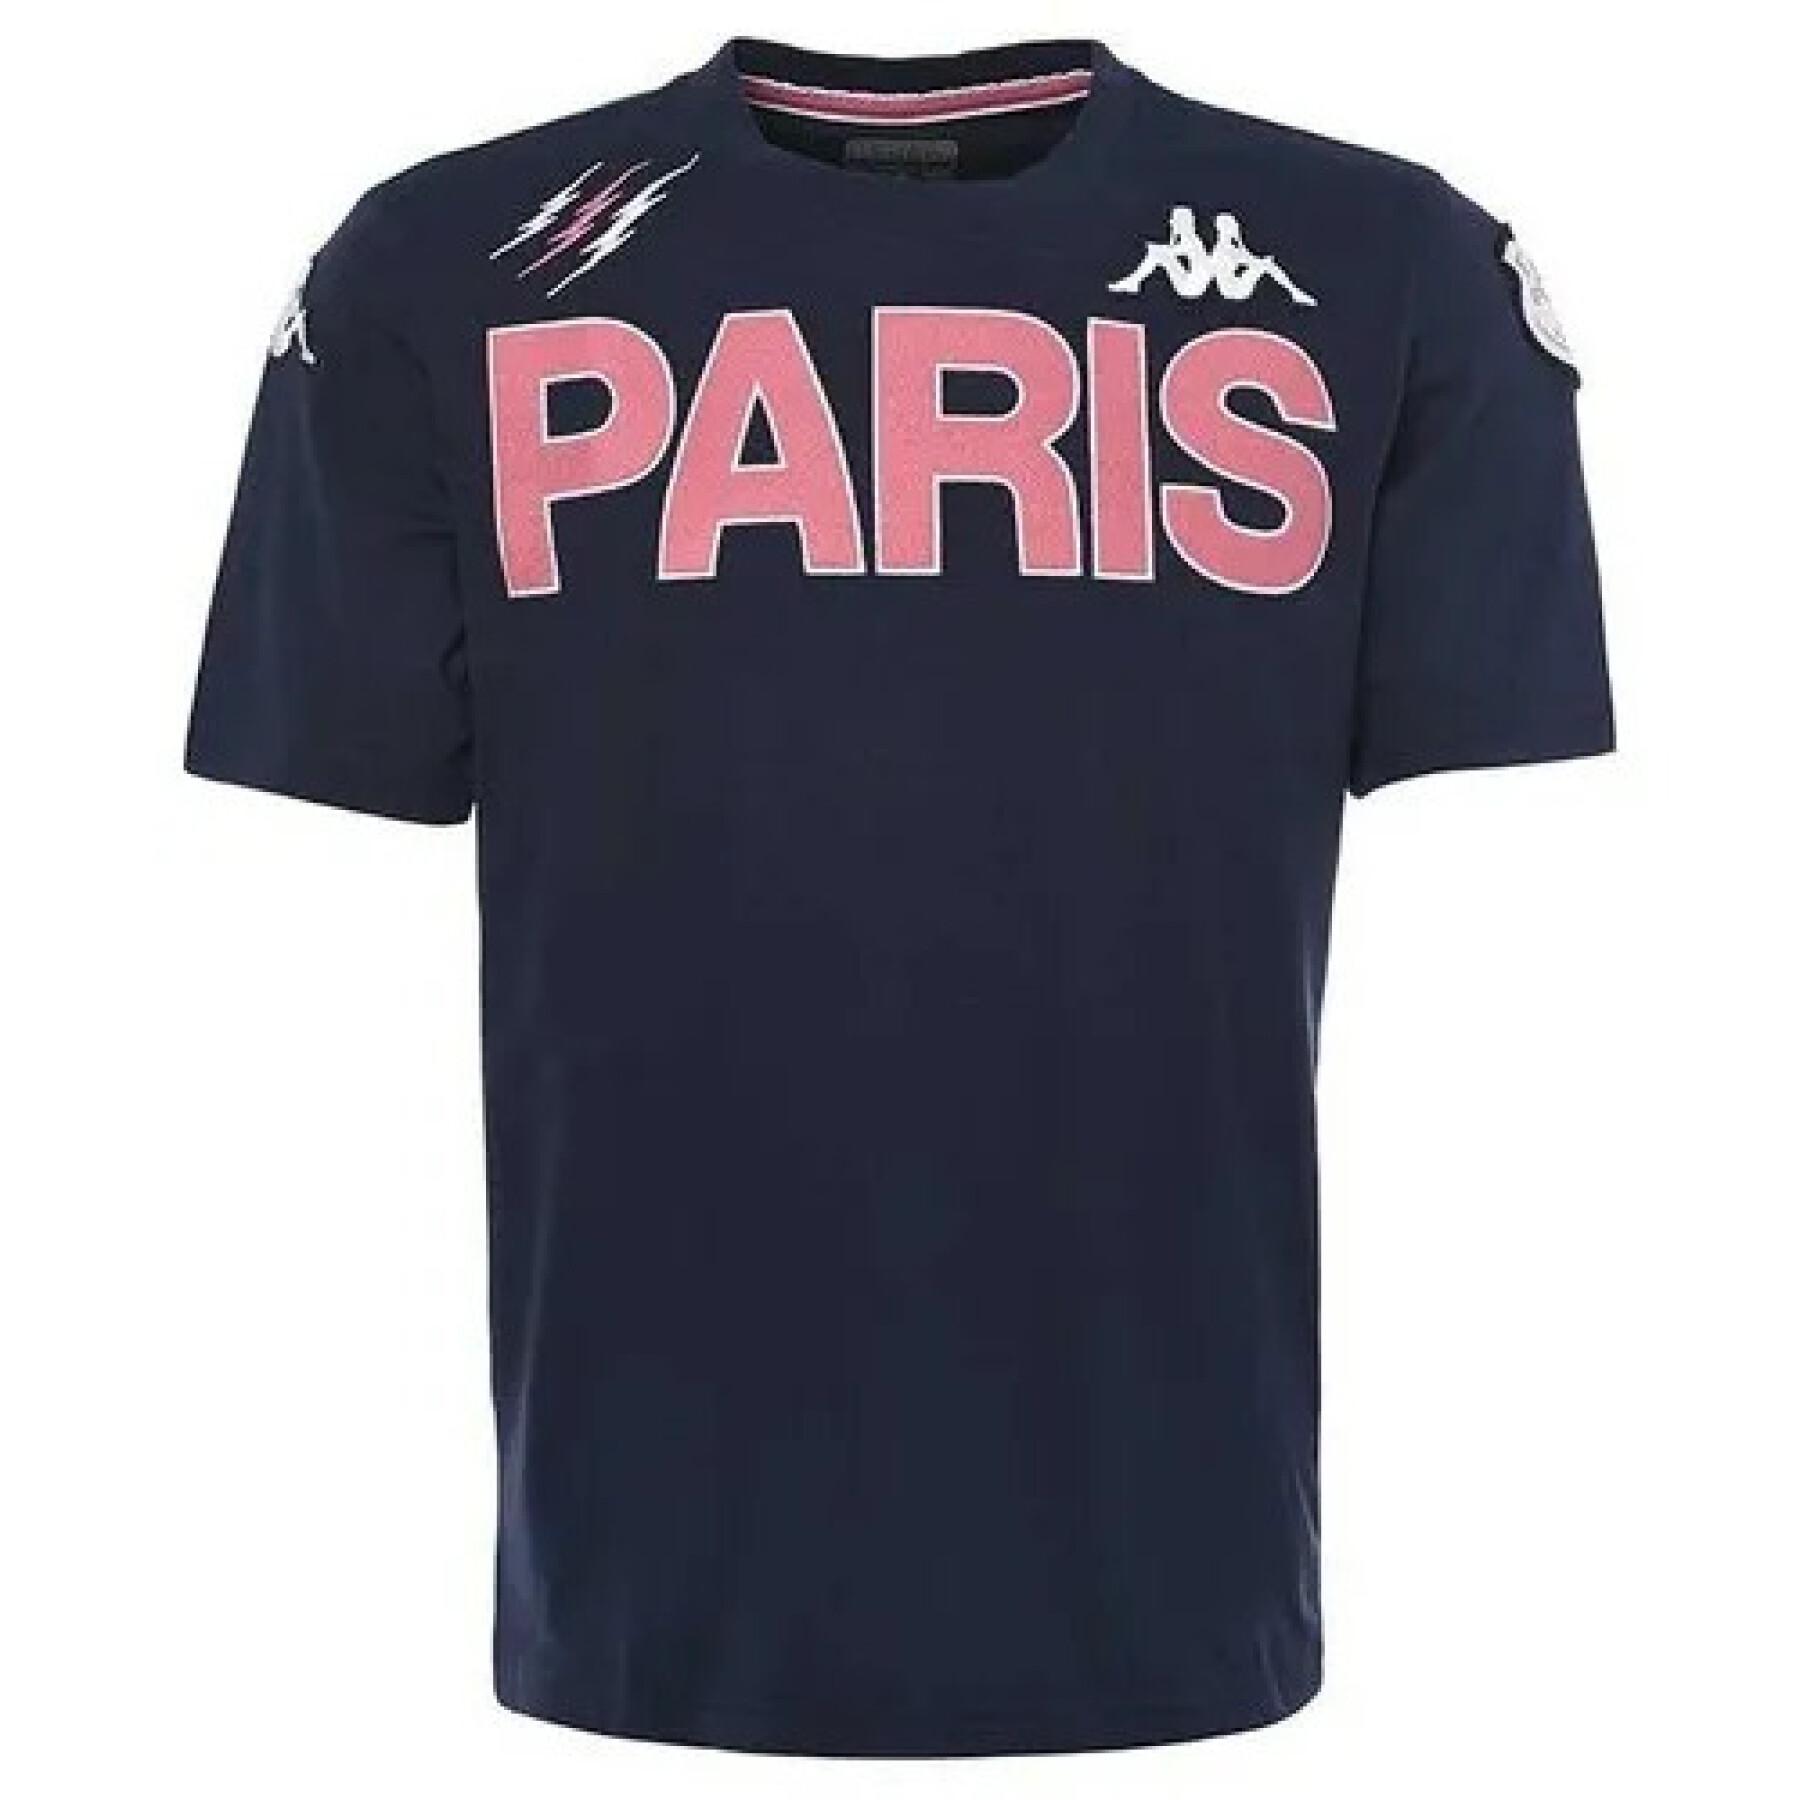 T-shirt criança Eroi Tee Stade Français Paris